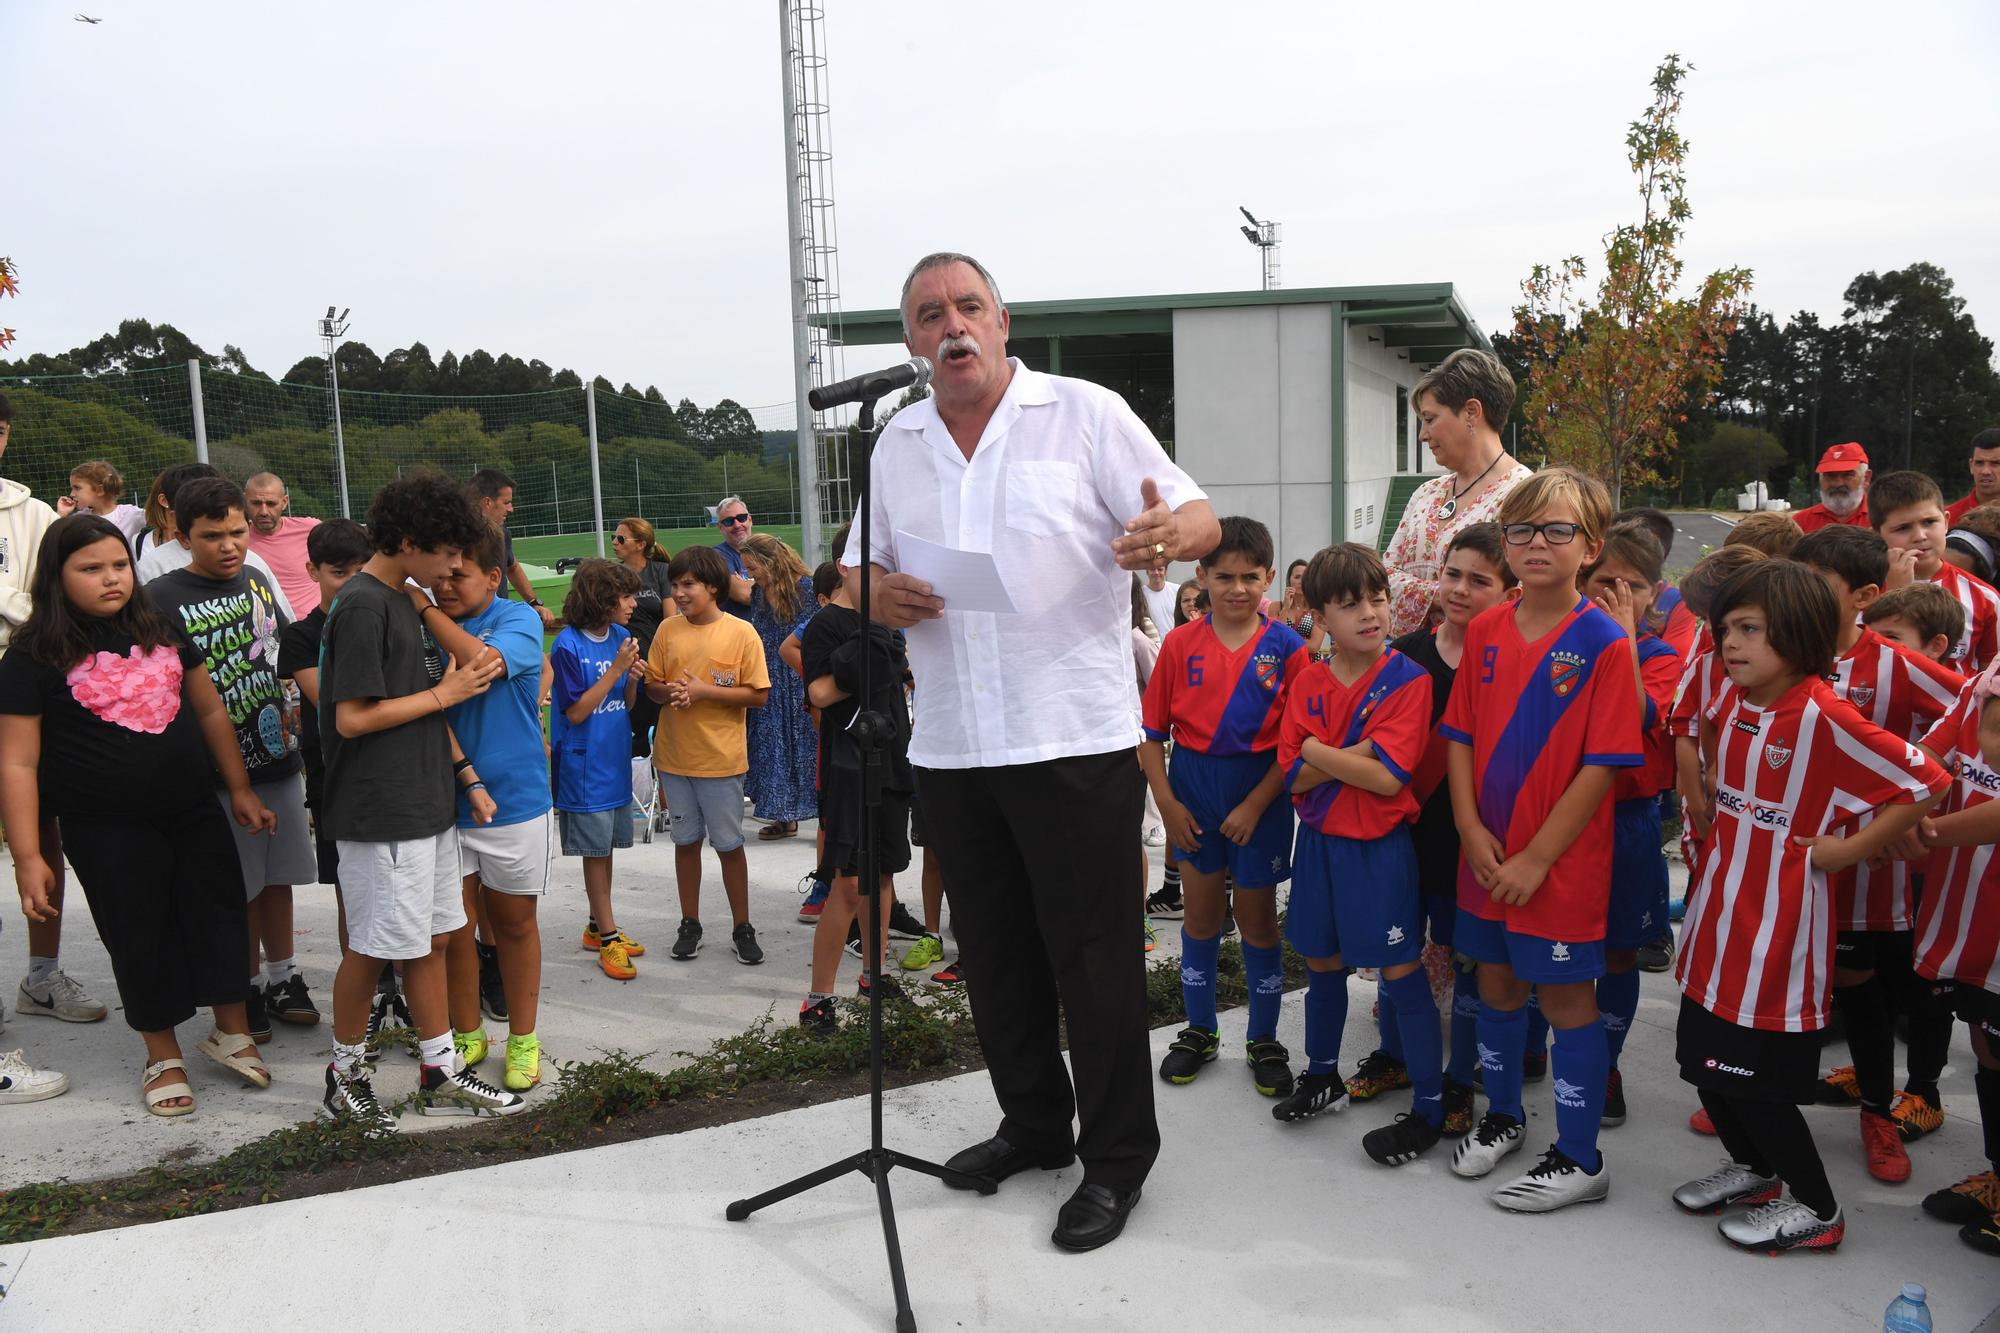 Inauguración del campo de fútbol del Marino de Mera en Oleiros